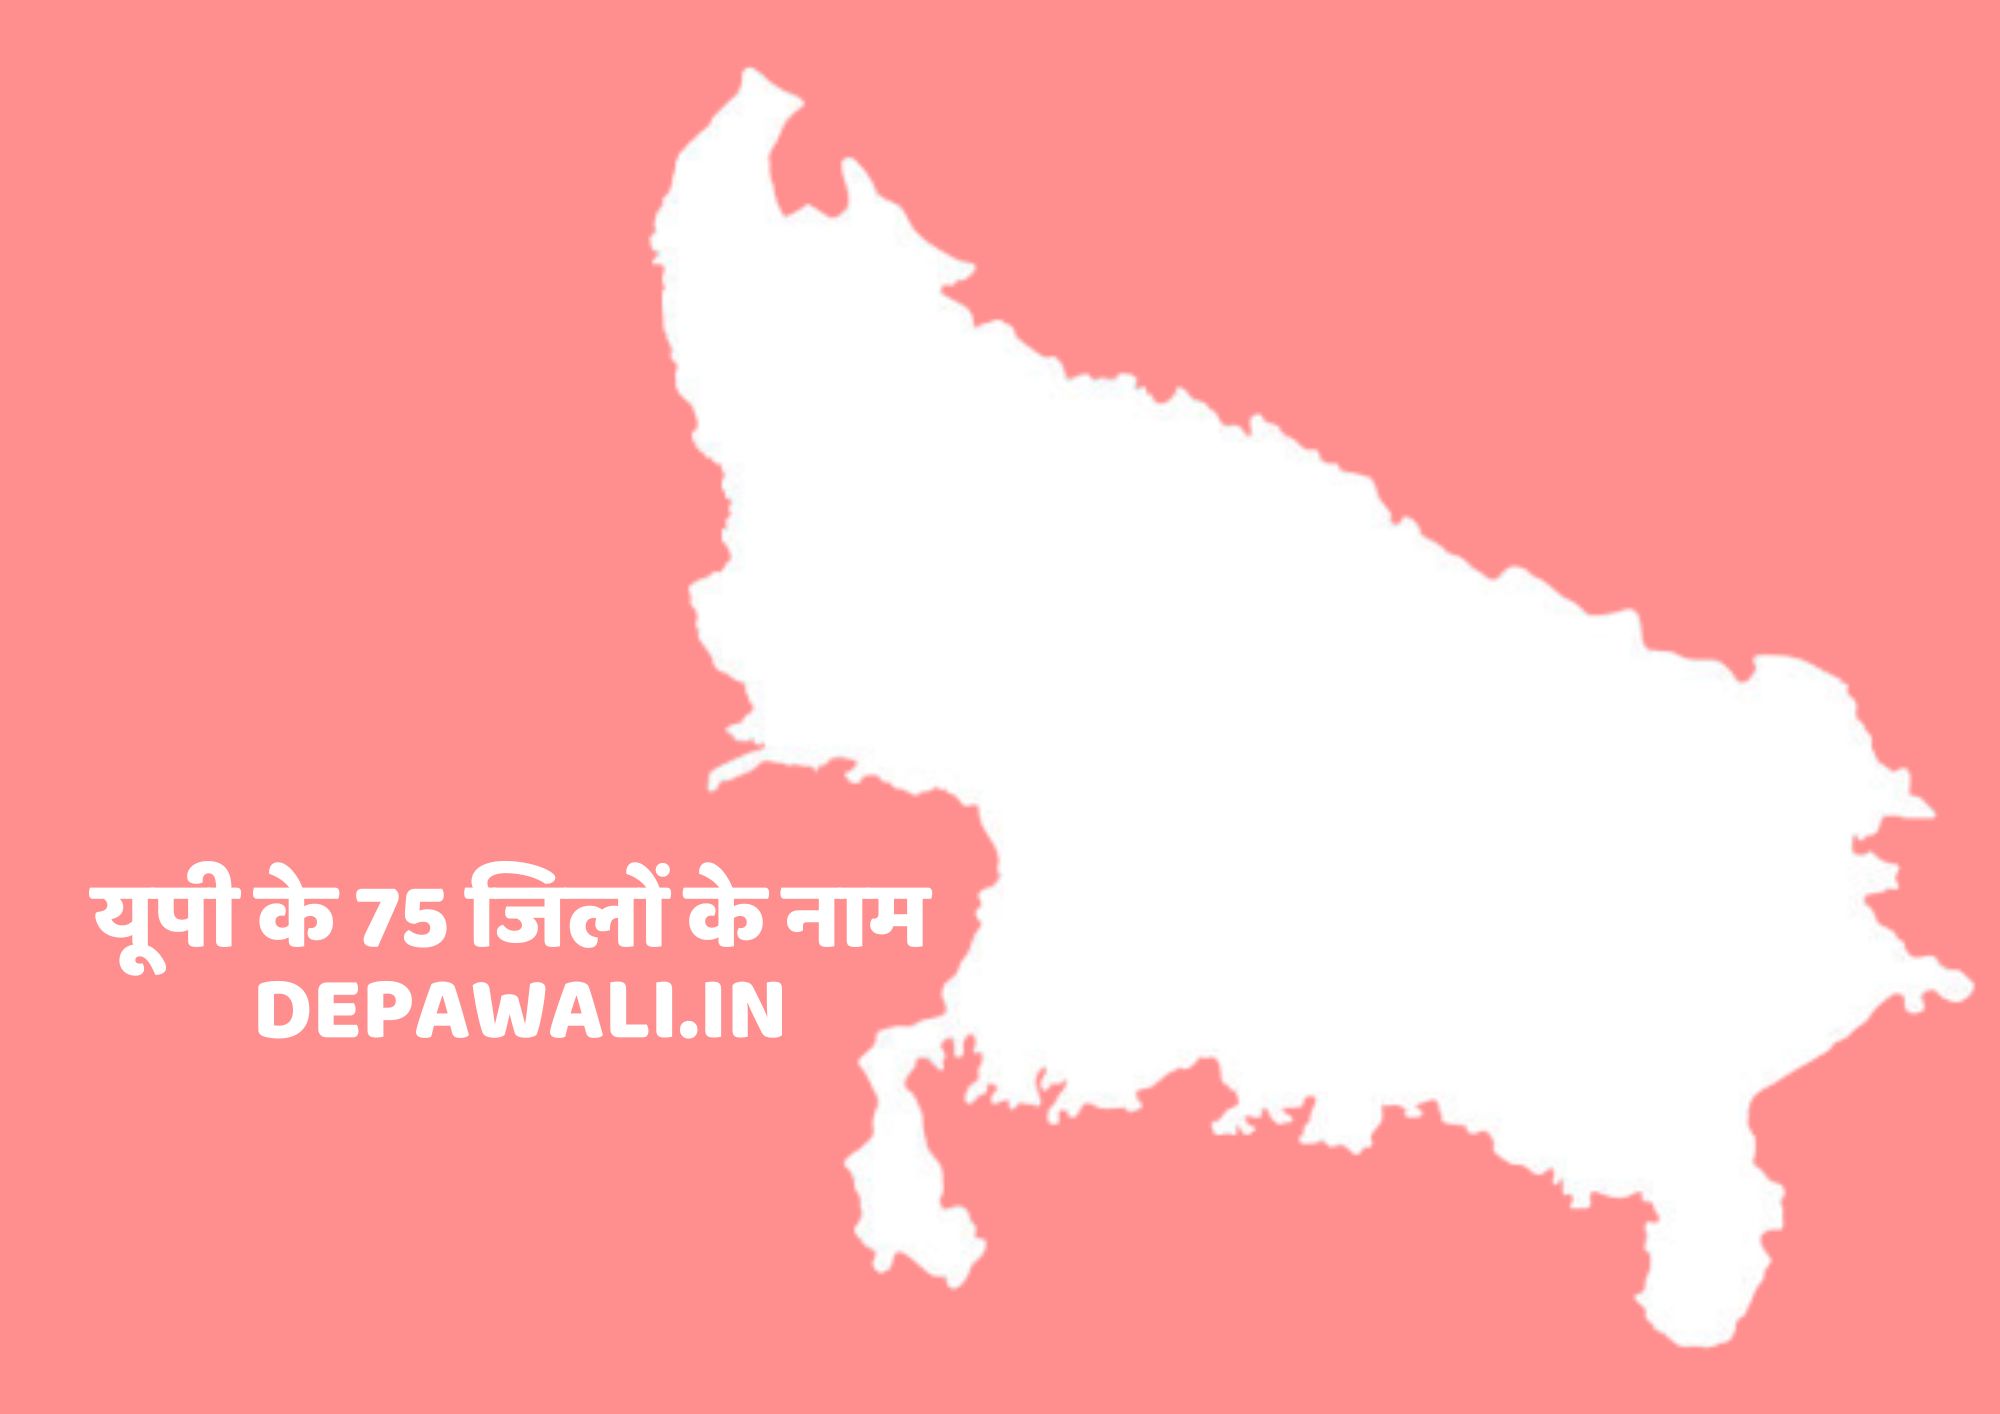 यूपी के 75 जिलों के नाम, उत्तर प्रदेश के 75 जिलों के नाम (Up 75 District Name In Hindi) - Uttar Pradesh Ke 75 Jilon Ke Naam